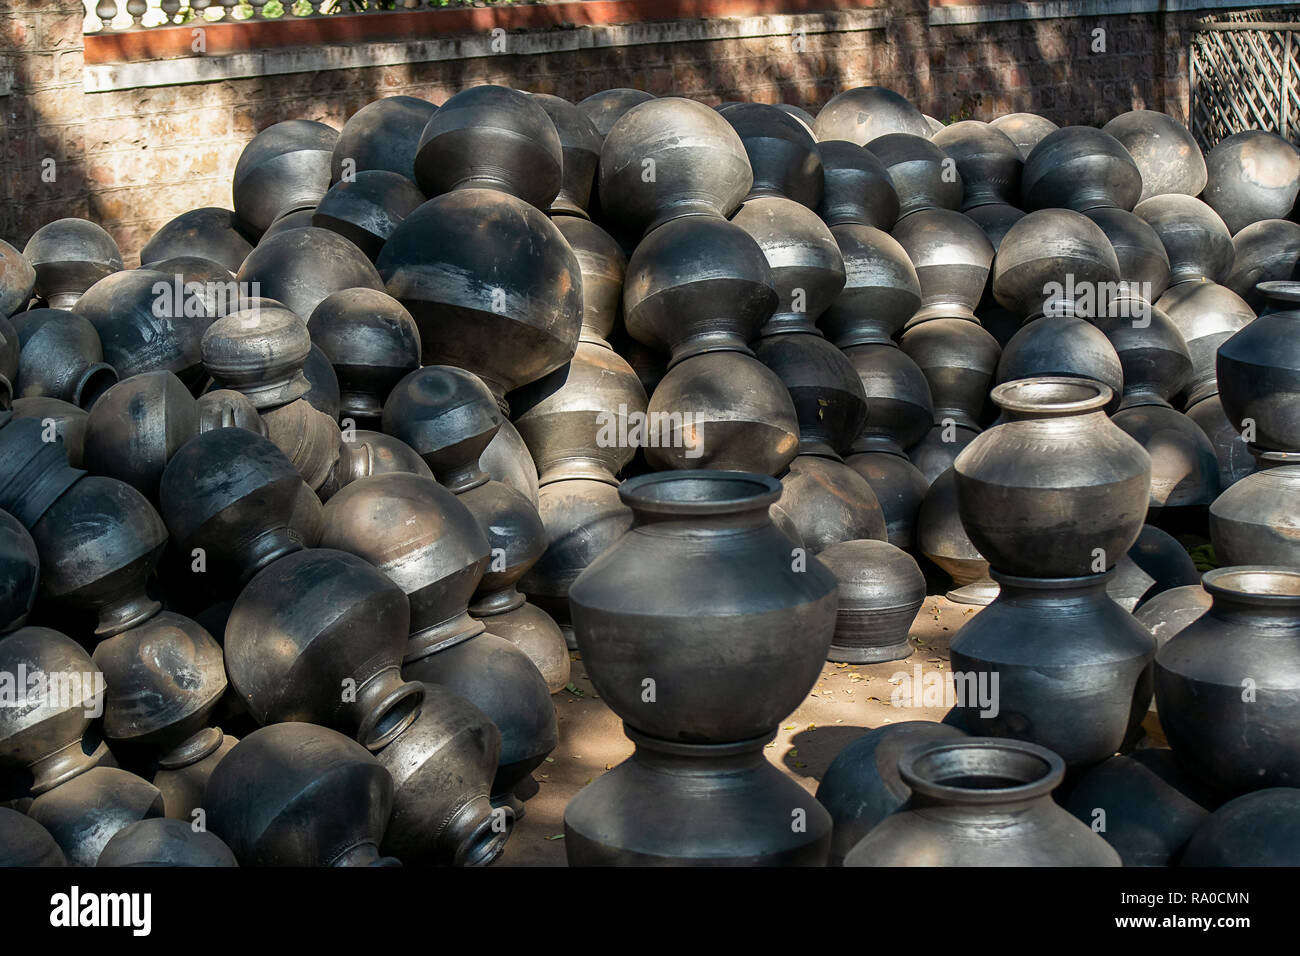 Große schwarze Ton Küche Lagerung Töpfe bis zu einem gesamten Verkauf Markt  für Verkauf in Indien bereit Stockfotografie - Alamy